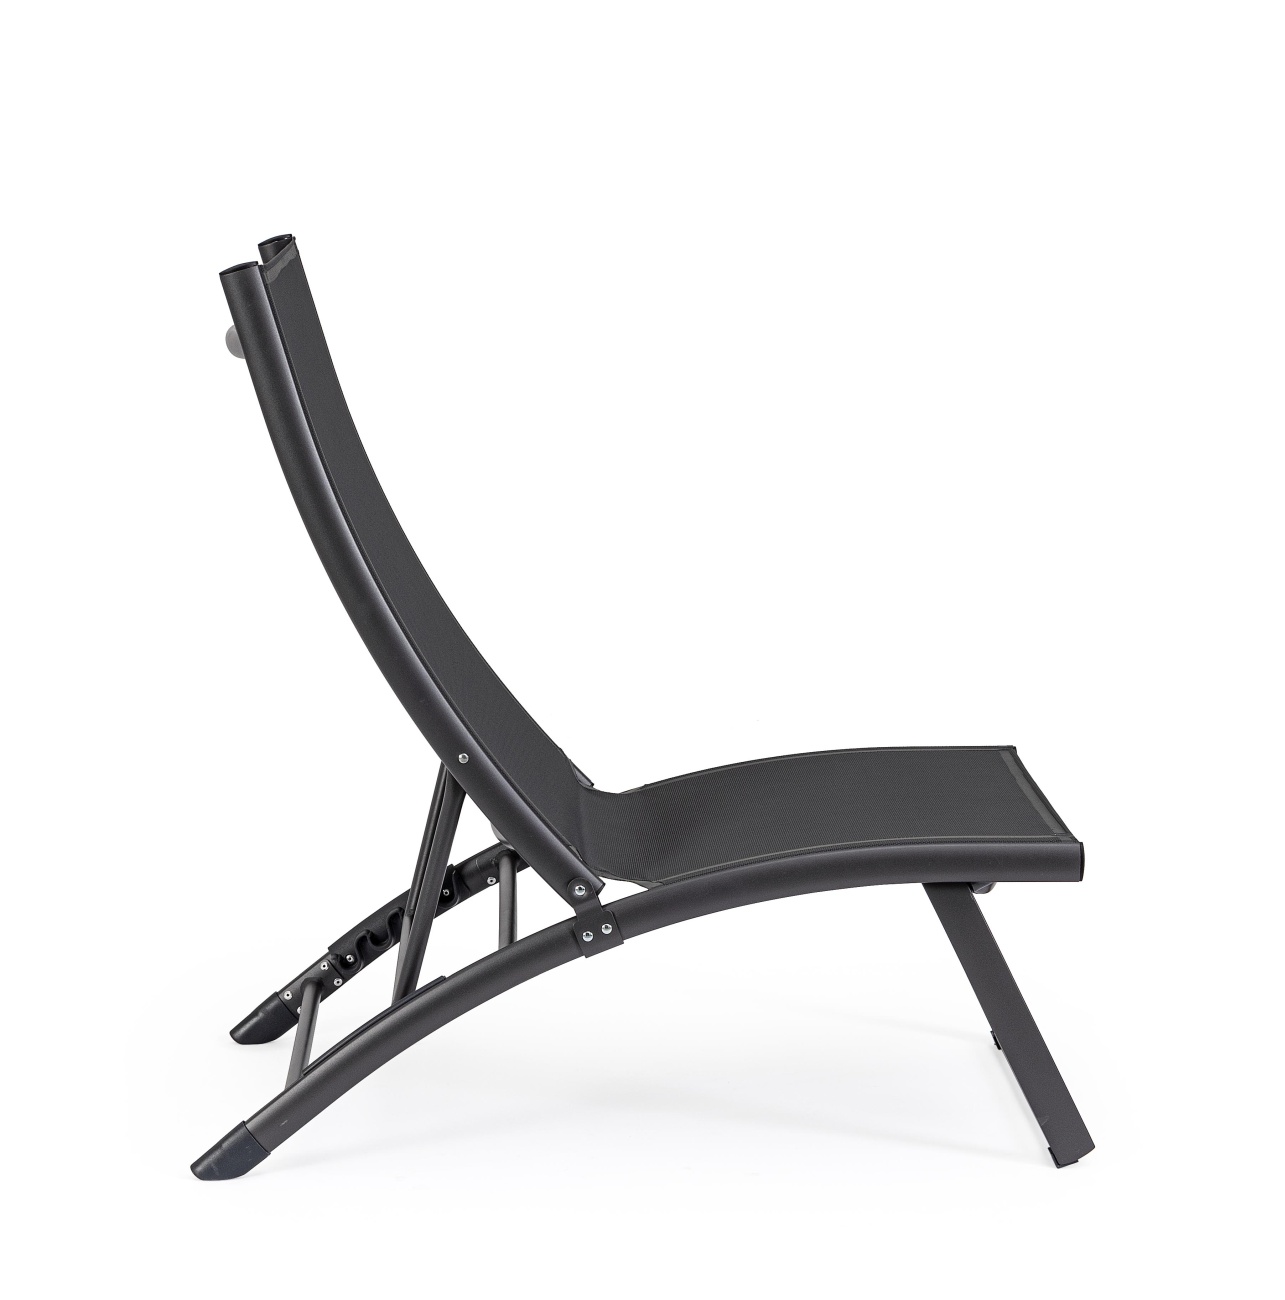 Der Loungesessel Taylor überzeugt mit seinem modernen Design. Gefertigt wurde er aus Textilene, welches einen dunkelgrauen Farbton besitzt. Das Gestell ist aus Metall und hat eine dunkelgraue Farbe. Der Sessel ist klappbar.